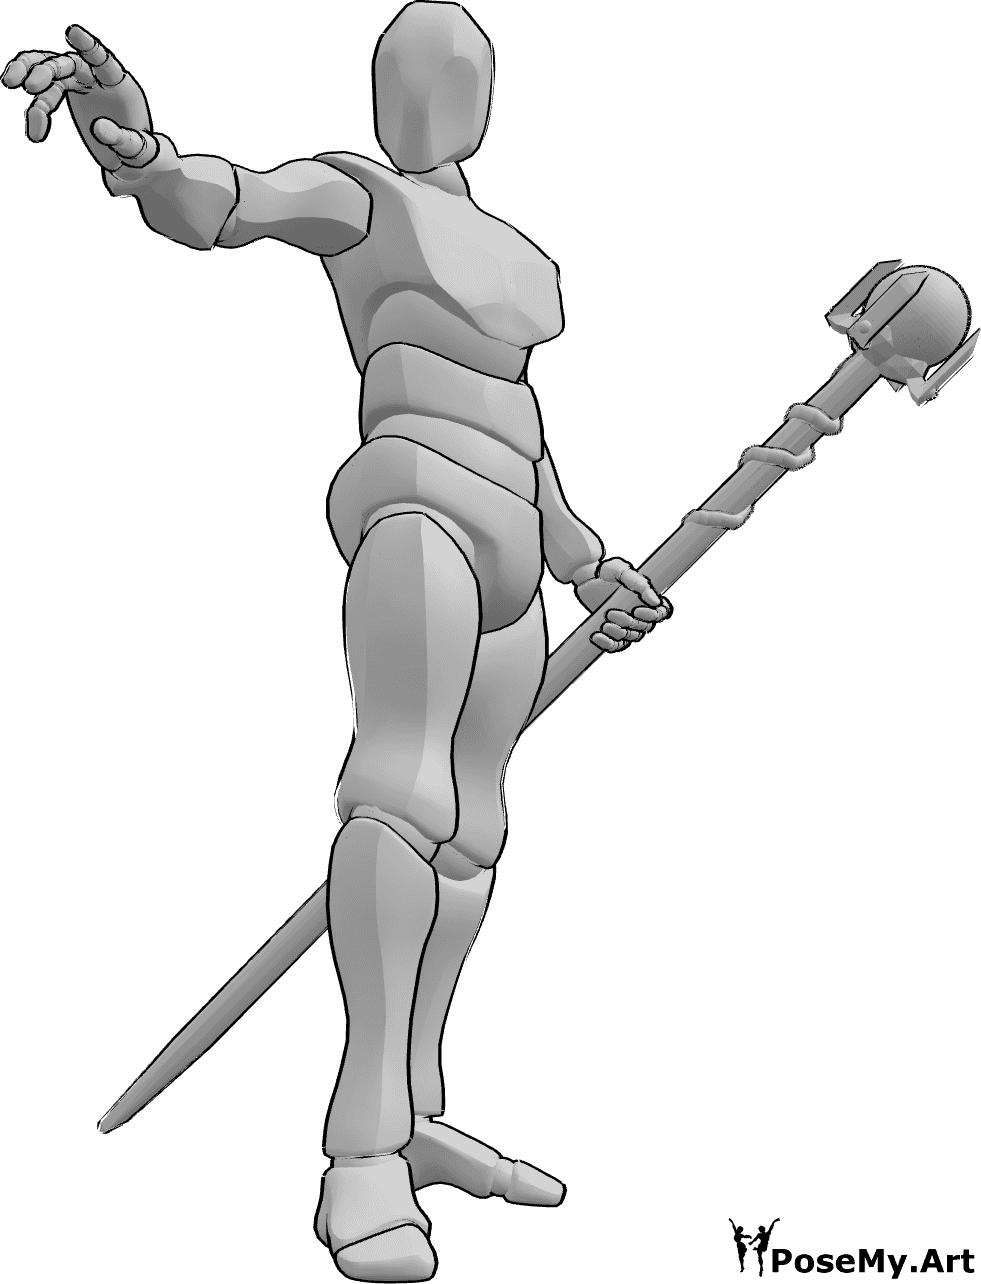 Referencia de poses- Pose de hombre mago - Mago masculino sostiene un bastón en la mano izquierda y lanza un hechizo con la derecha